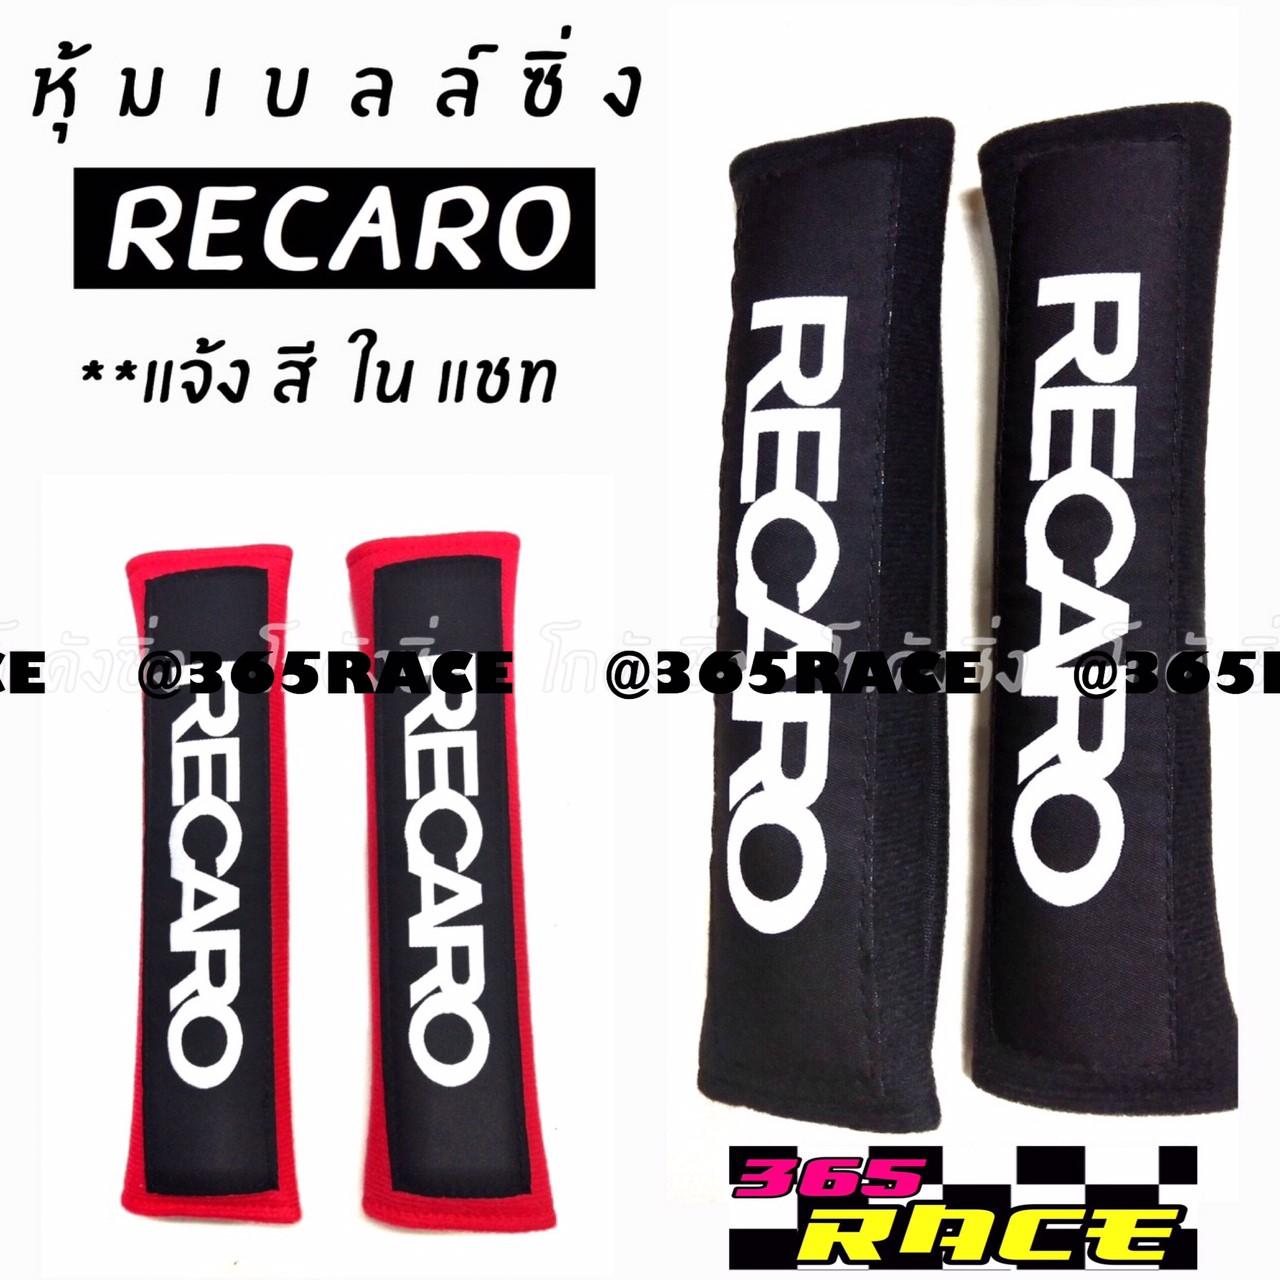 365RACE นวมหุ้มเบลท์ RECARO 1ชุดมี2ชิ้น  (*ผ้านวมแดง/นวมดำ) *แจ้งสีในแชท